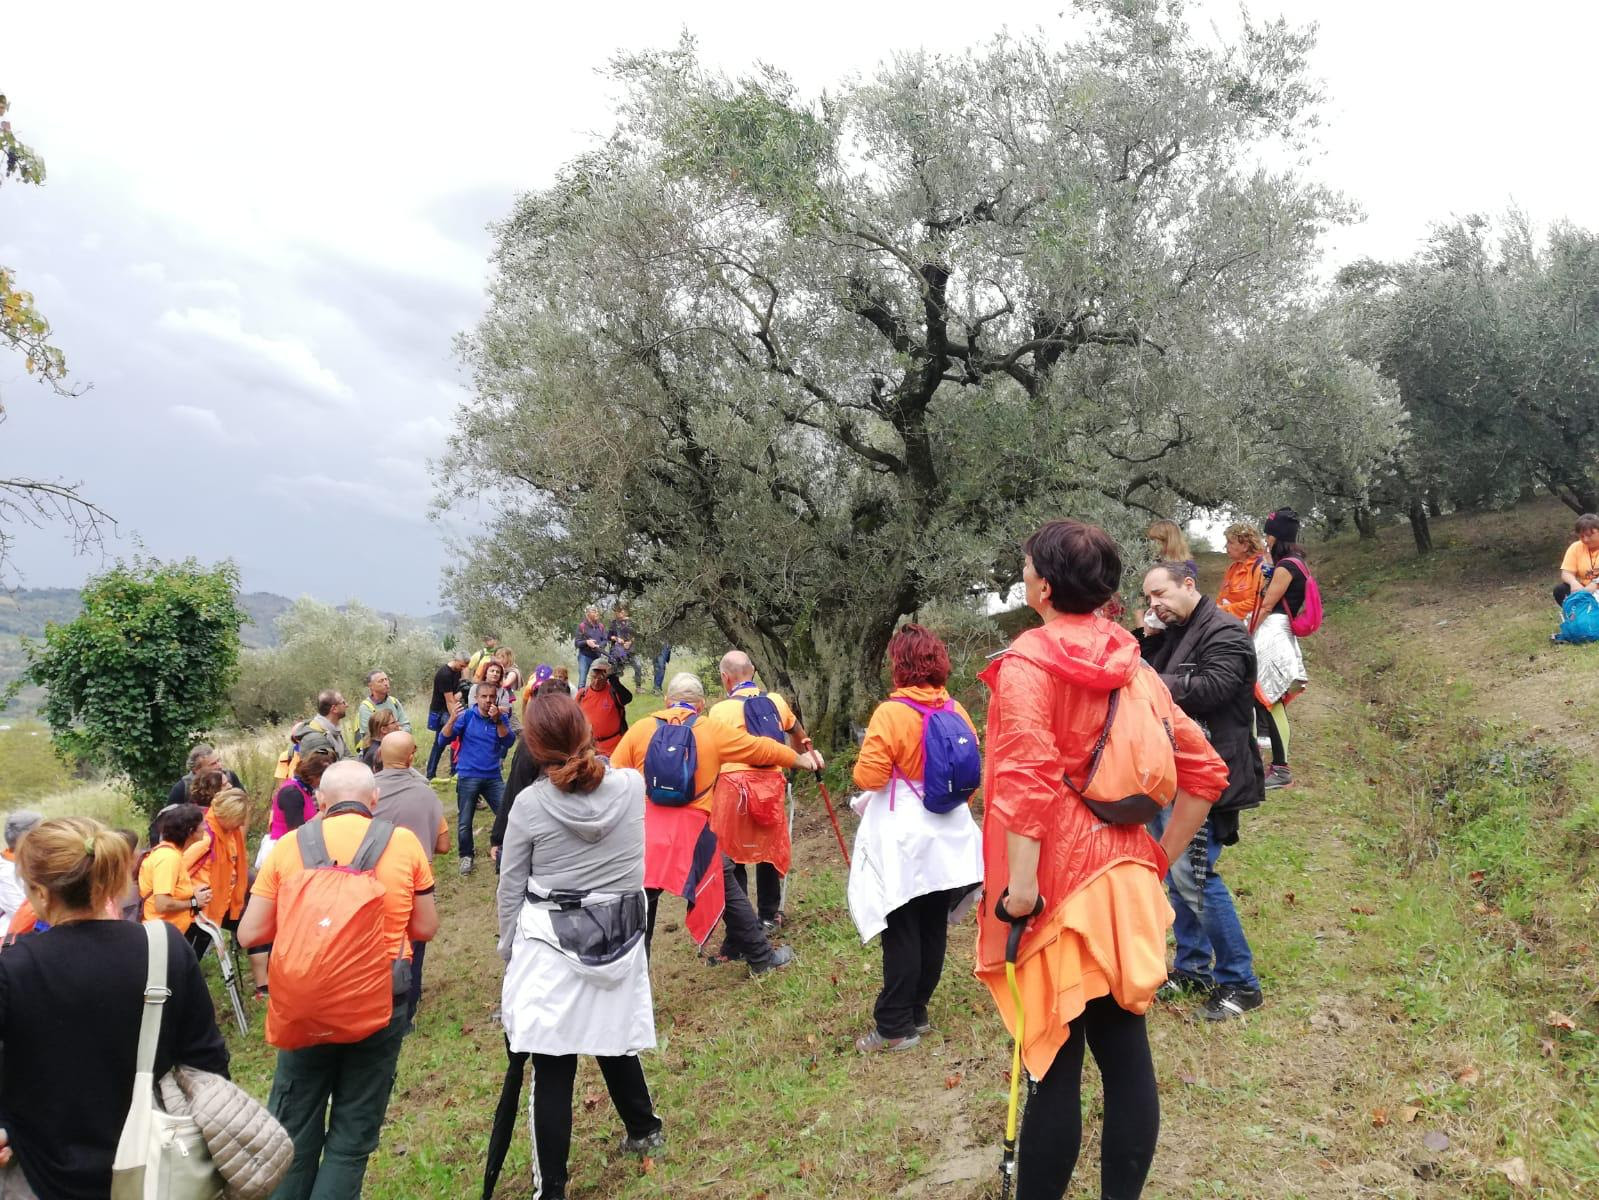 Camminata tra gli olivi in Campania, scopri dove